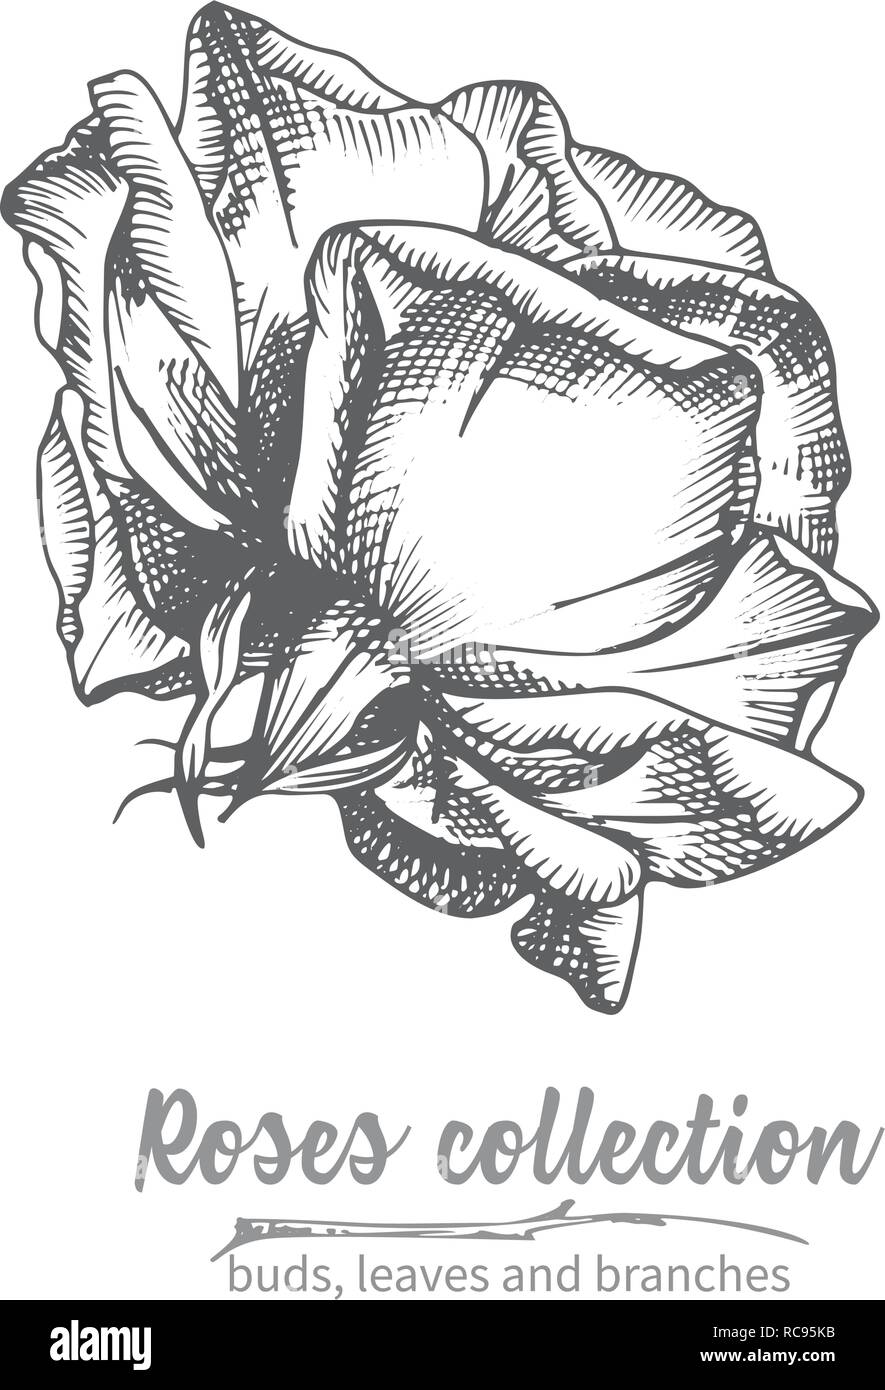 Mano bozzetto di rose, singolo bud vintage dettagliata illuatration botanico. Nero con motivi floreali silhouette isollated su sfondo bianco Creative arte grafica in stile di incisione Illustrazione Vettoriale